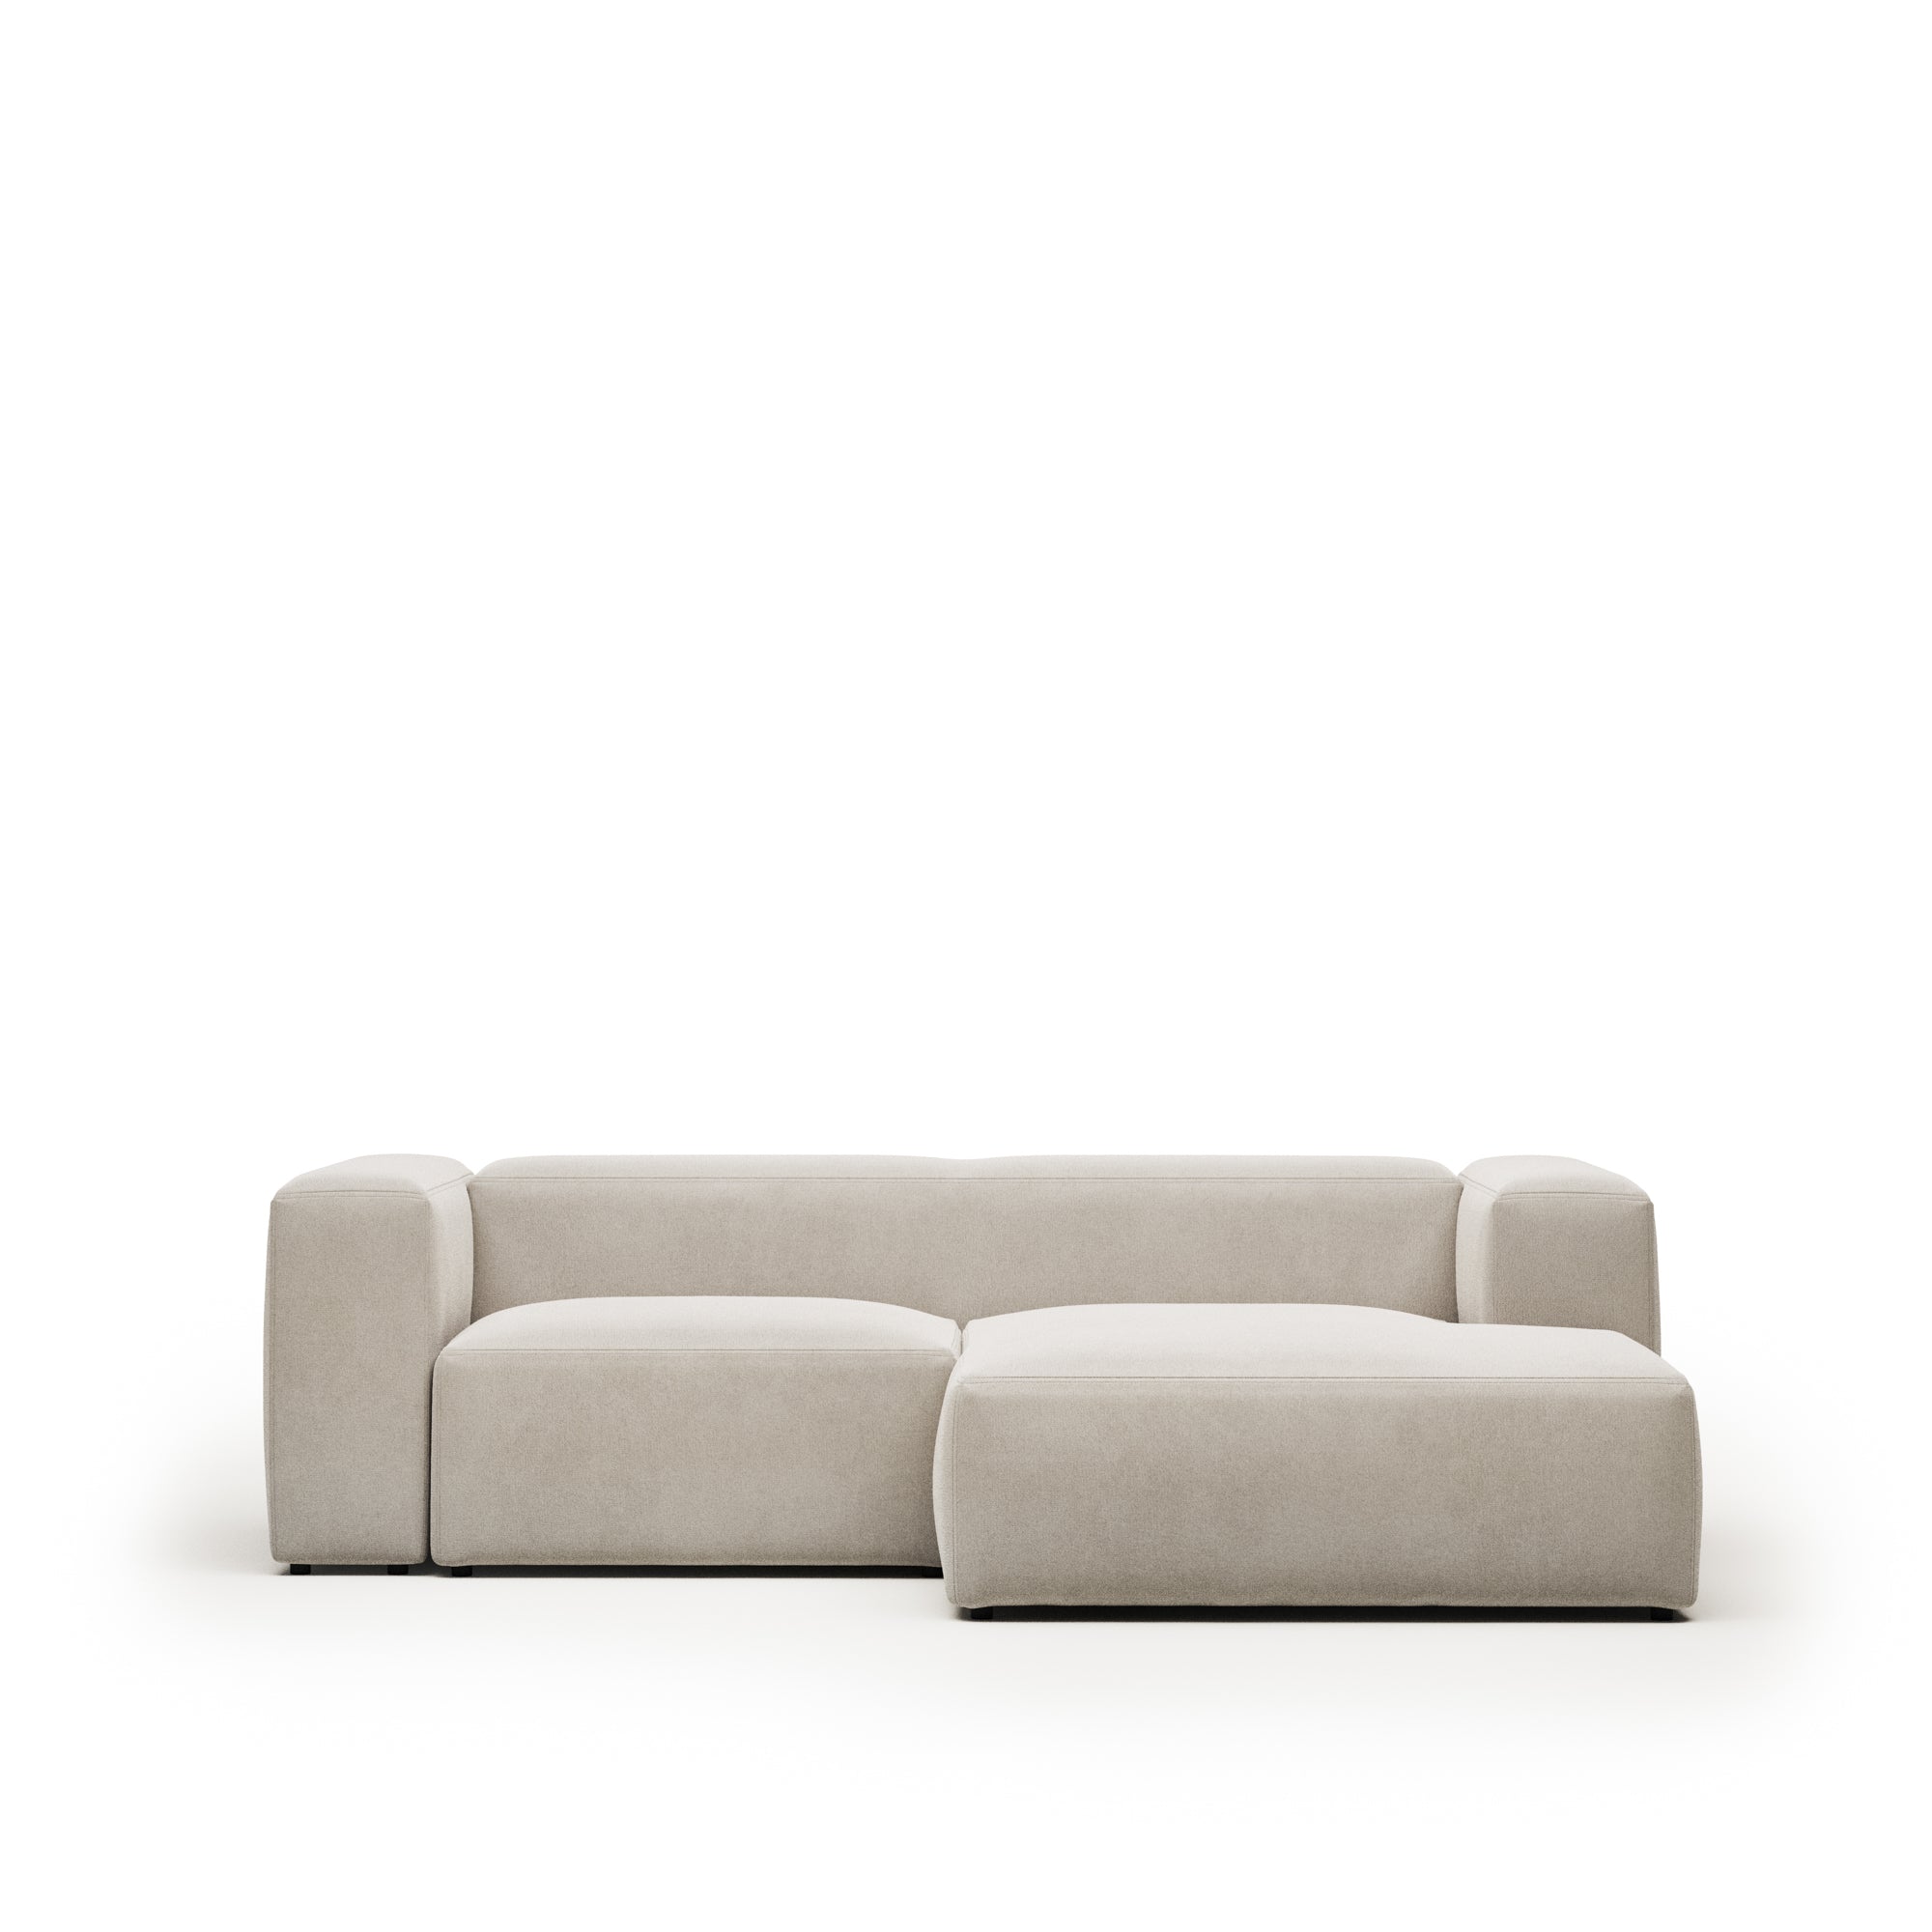 Bloka 2 személyes kanapé jobb oldali fekvőfotellel, bézs színben, 240 cm